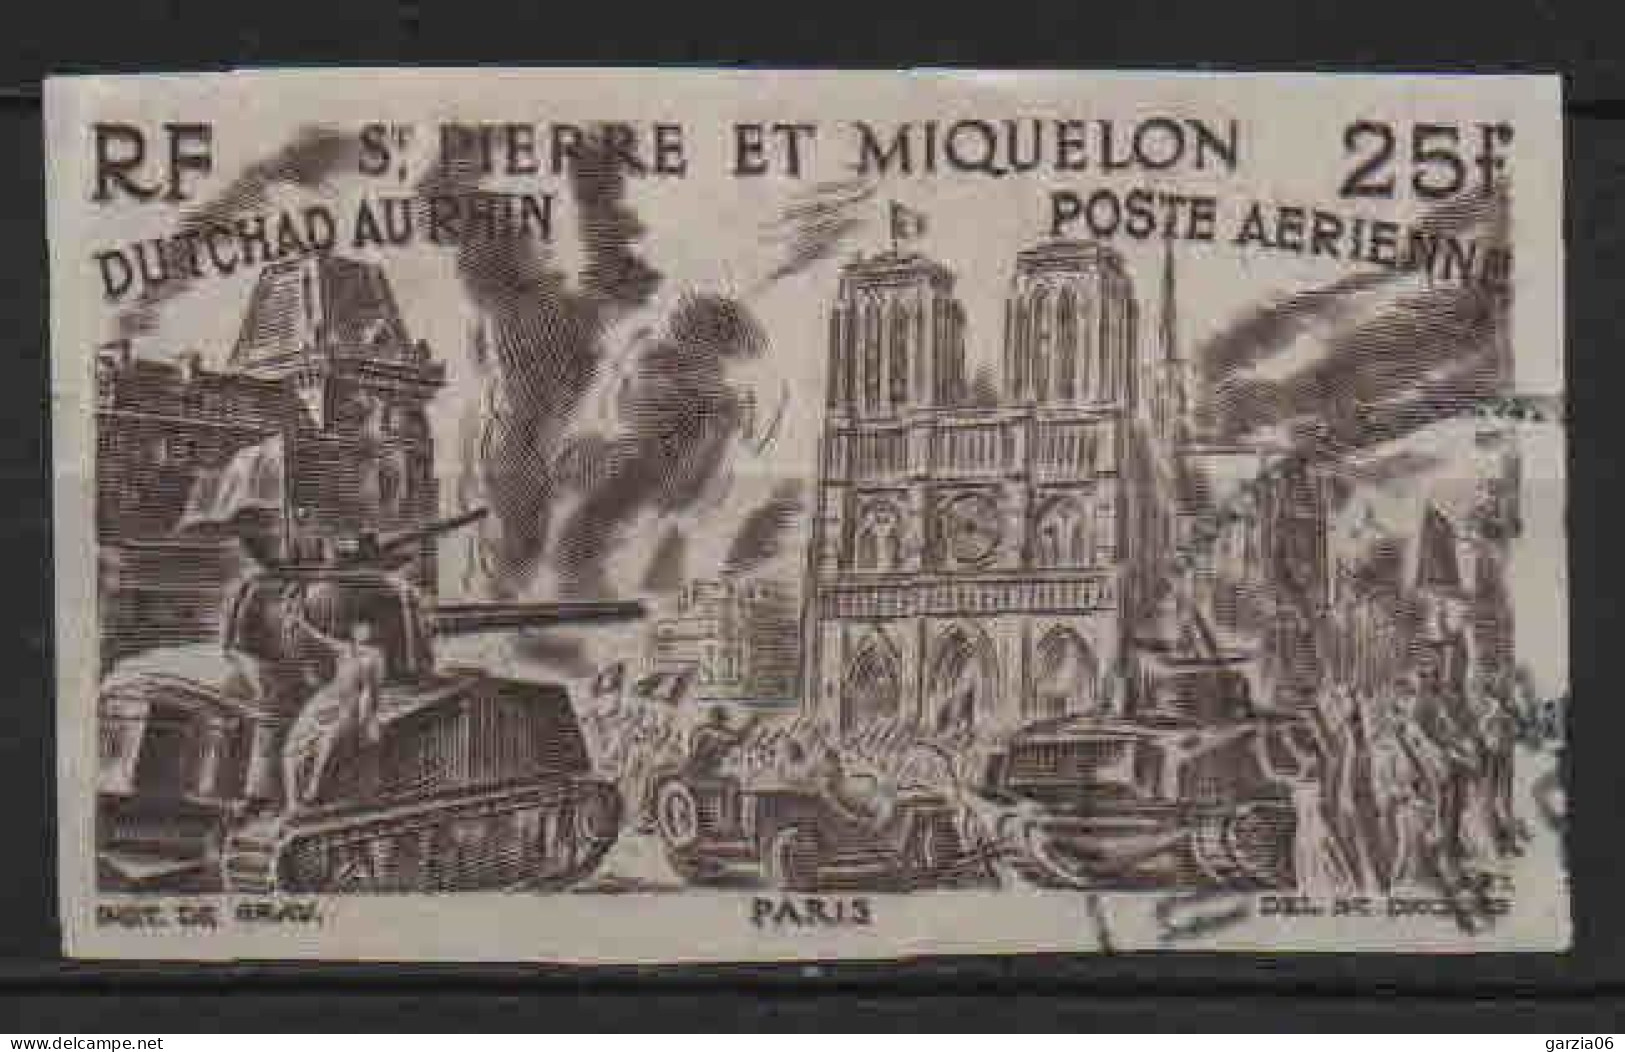 St Pierre Et Miquelon - 1956 -  Tchad Au Rhin  - Non Dentelé - PA 16 - Oblit - Used - Usati